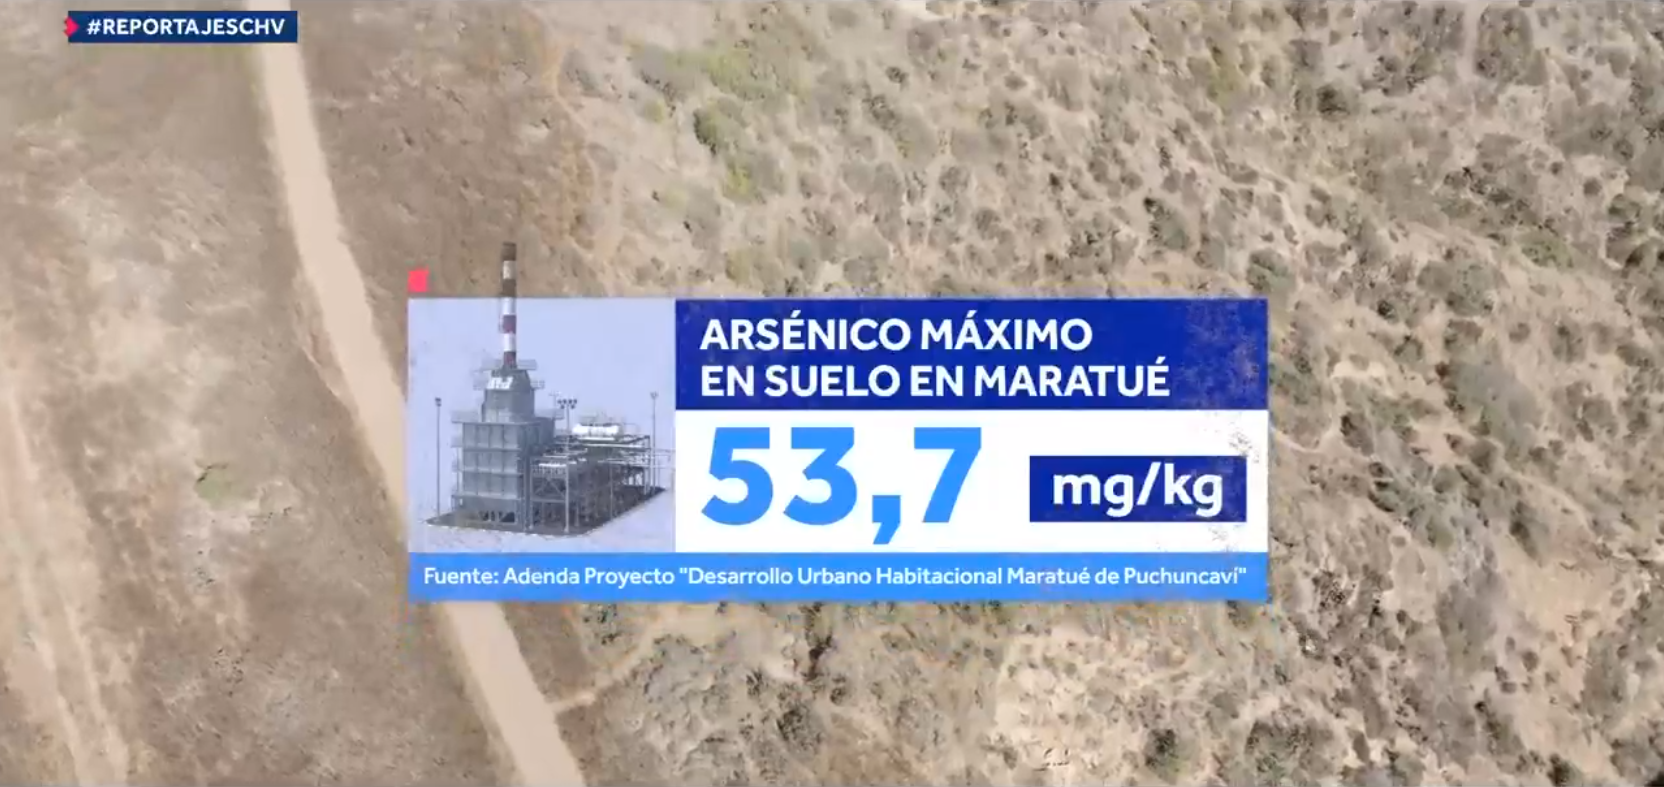 Niveles máximos de arsénico registrados en Maratué. Fuente: Desarrollo Urbano Habitacional Maratué de Puchuncaví.